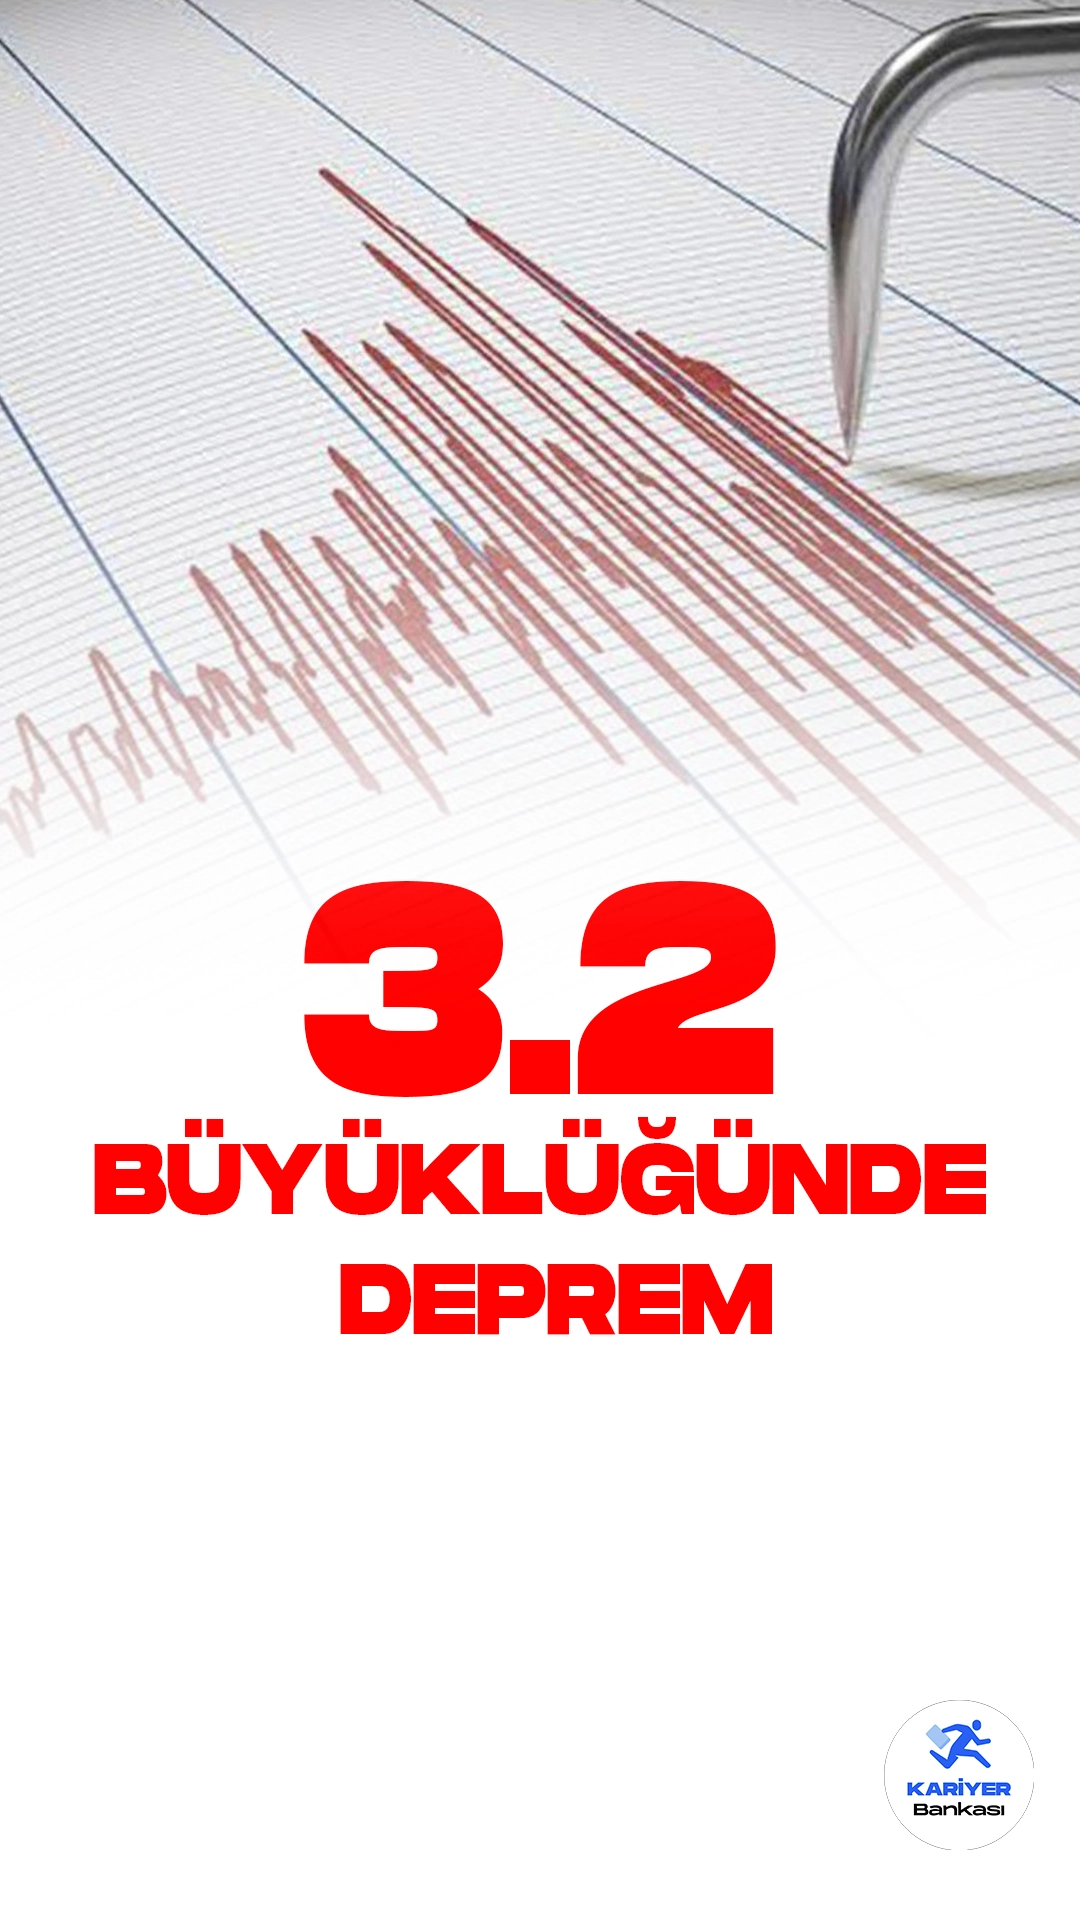 Çanakkale'de 3.2. Büyüklüğünde Deprem Oldu. Kandilli Rasathanesi Deprem Araştırma Enstitüsü tarafından yayımlanan son dakika duyurusuna göre, Çanakkale Ayvacık-Kocaköy'de 3.2 büyüklüğünde deprem meydana geldiği aktarıldı.